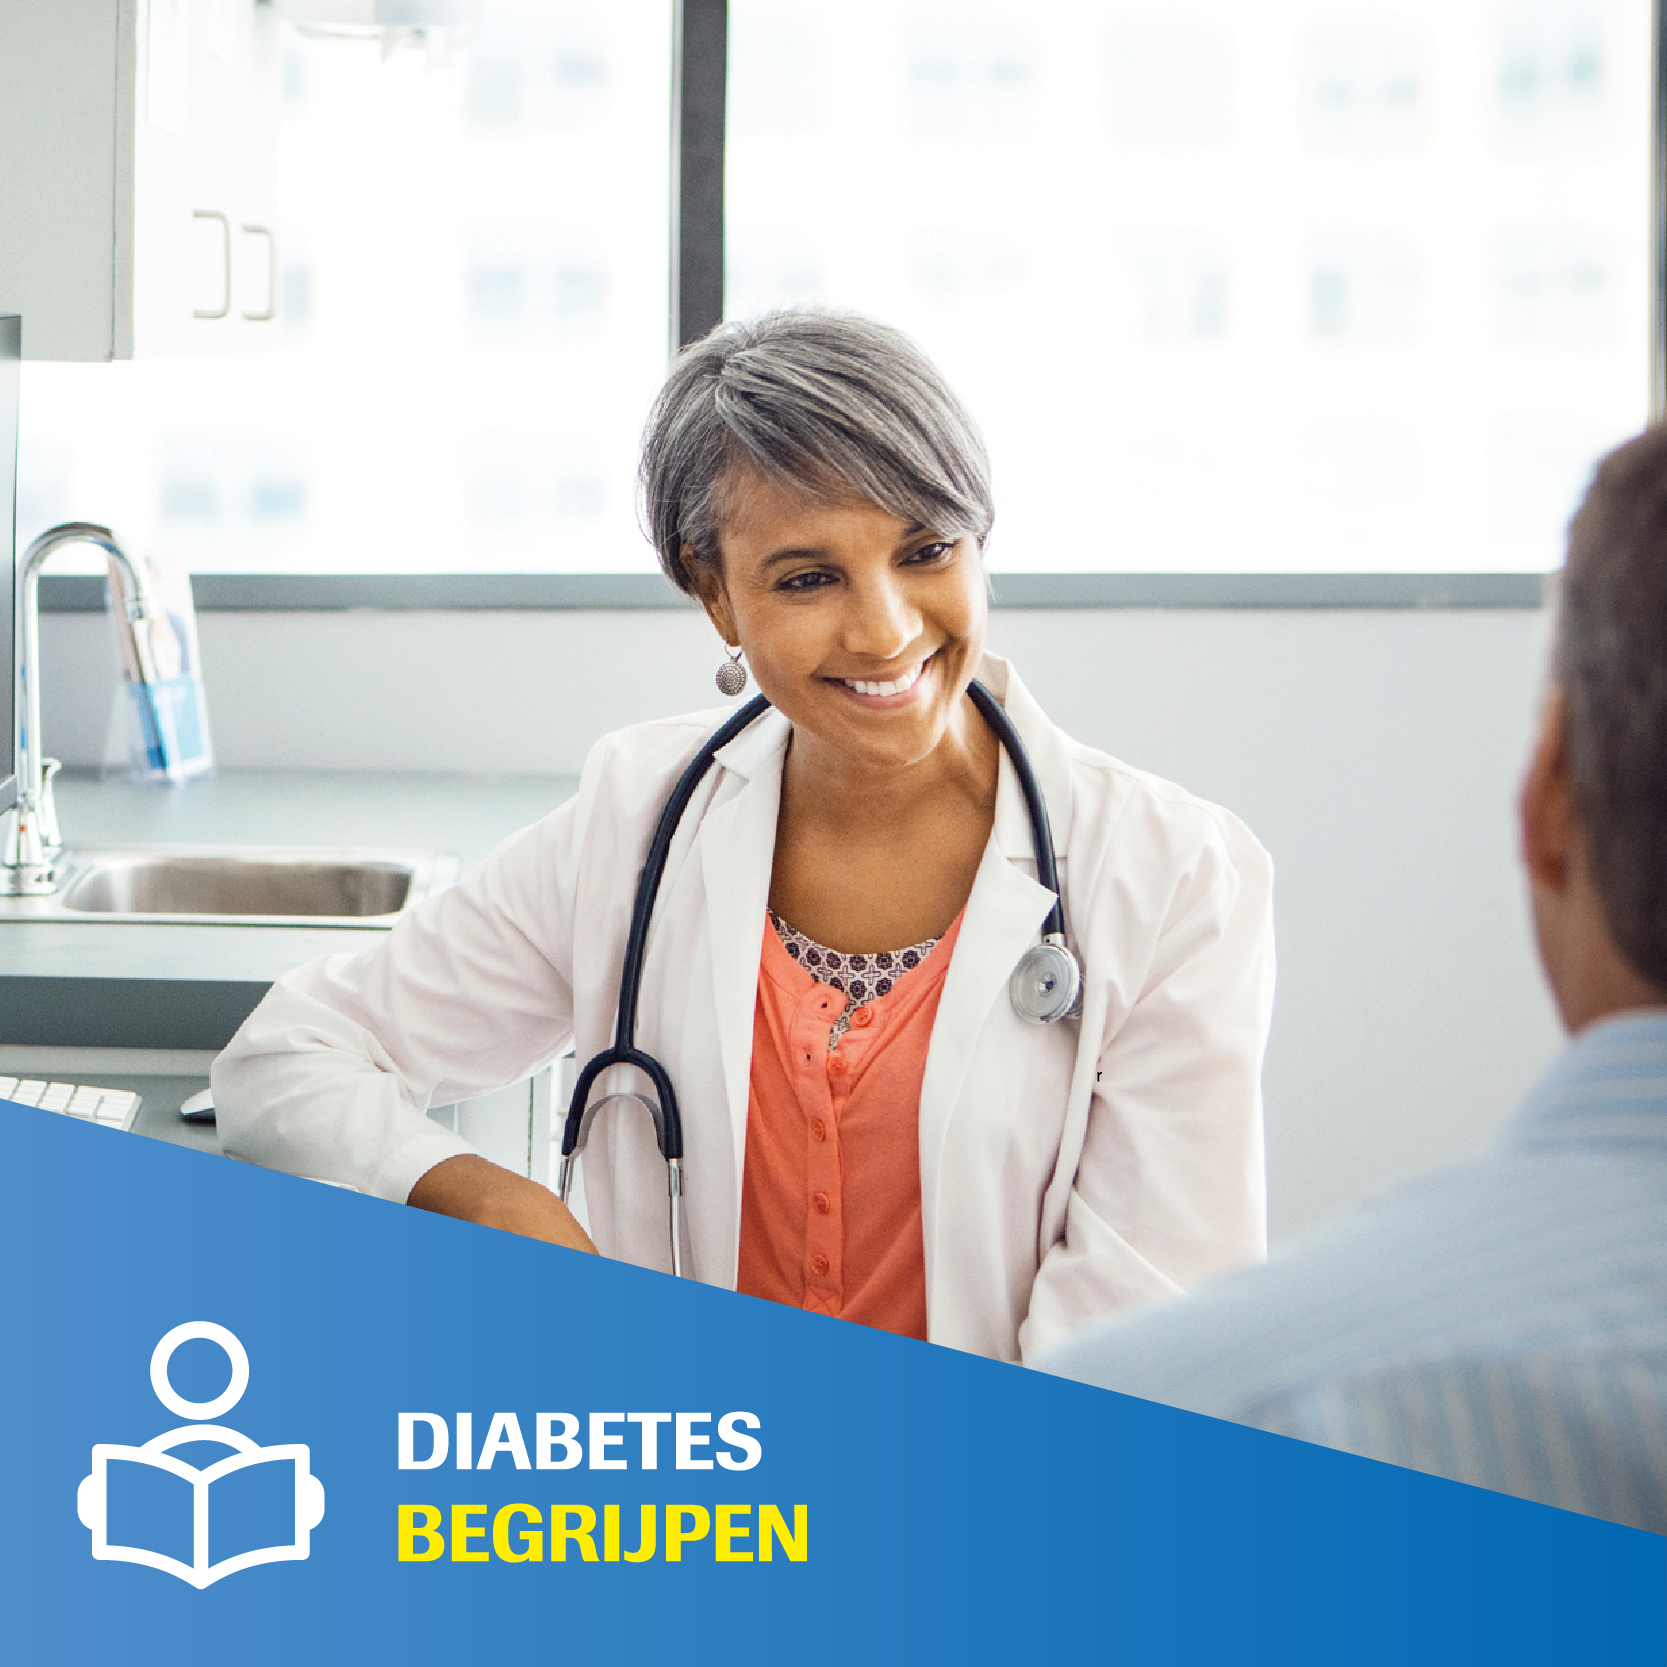 De verschillende type diabetes : type 1, type 2 en zwangerschapsdiabetes